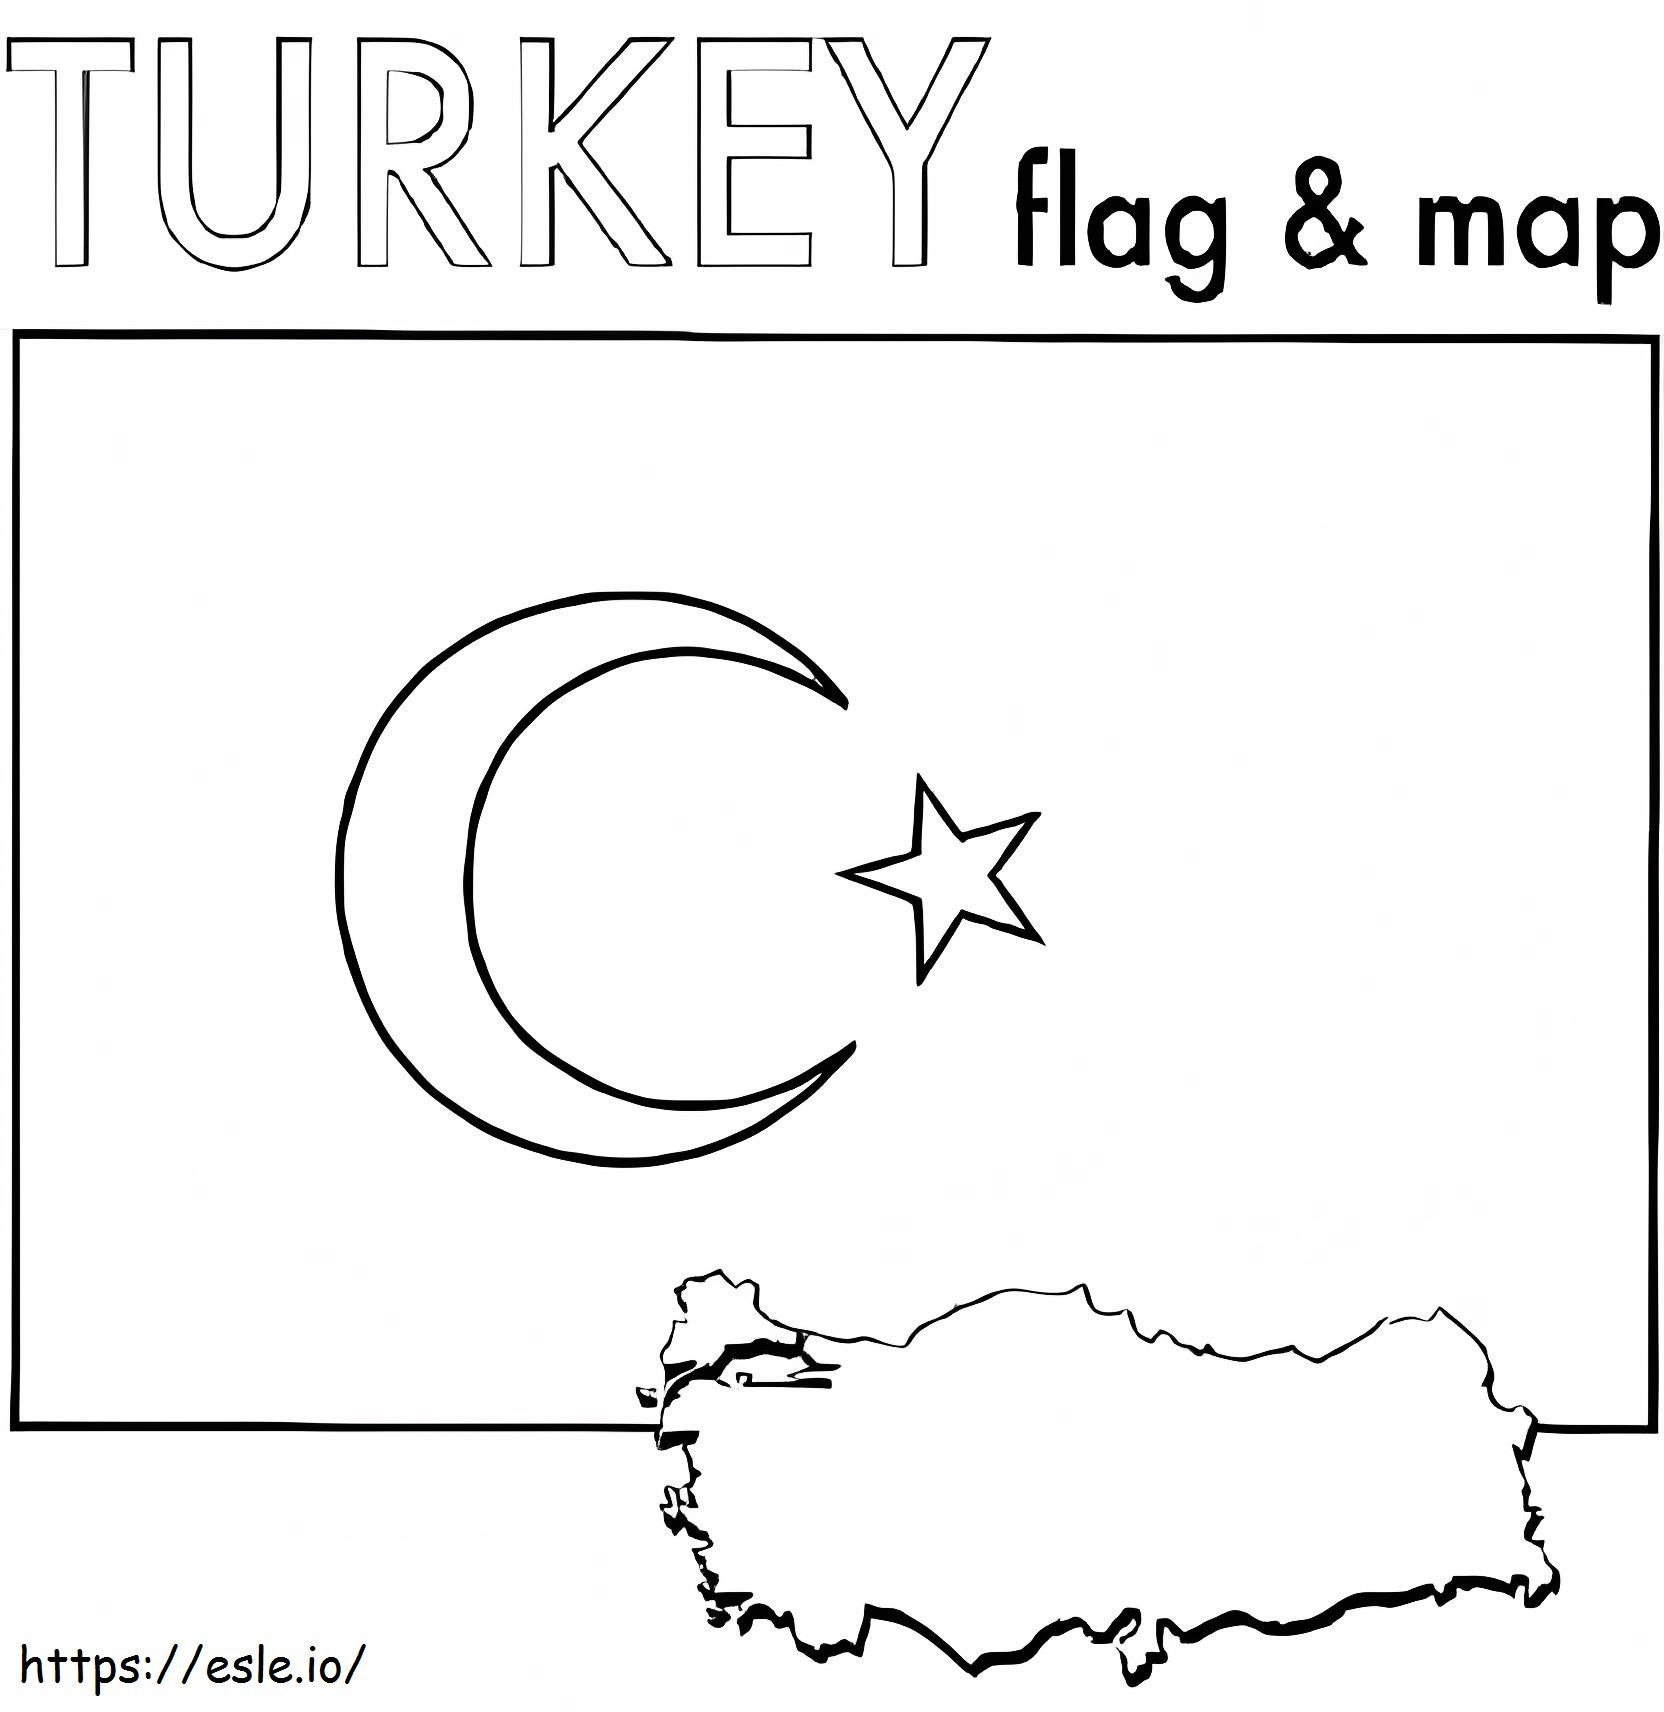 Bandiera e mappa della Turchia da colorare